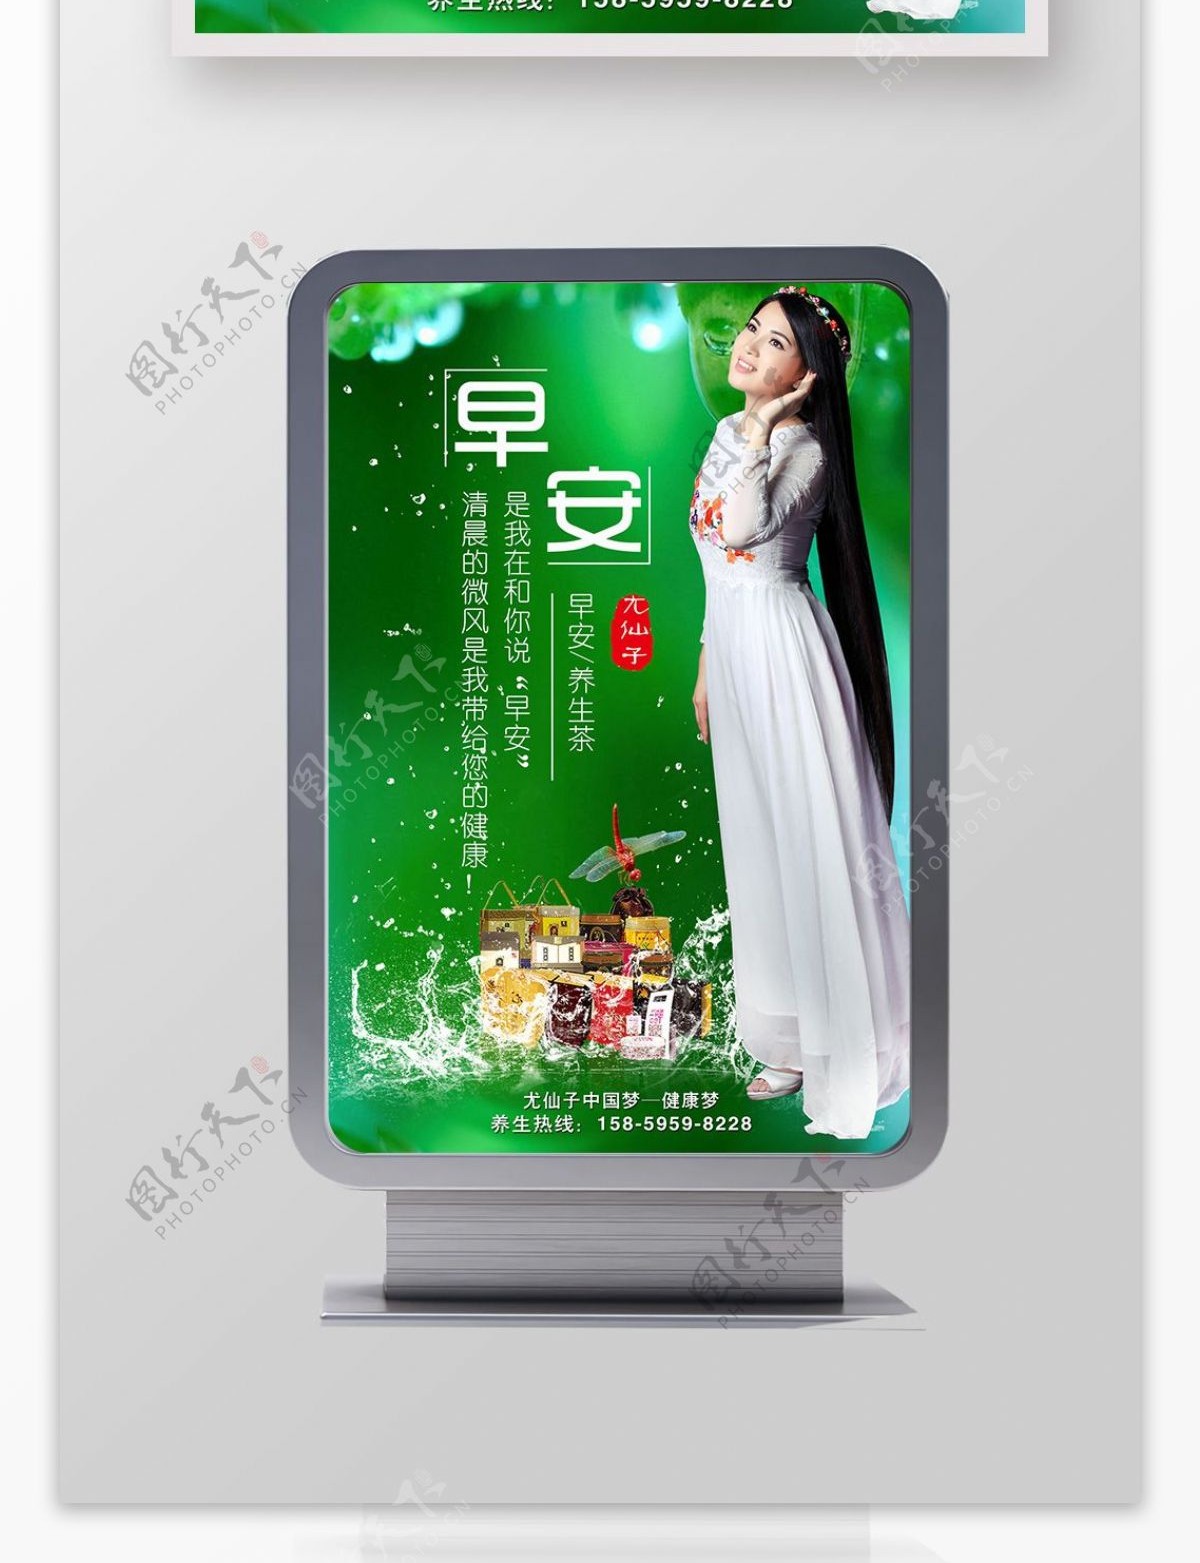 尤仙子企业文化早安养生茶绿色背景海报